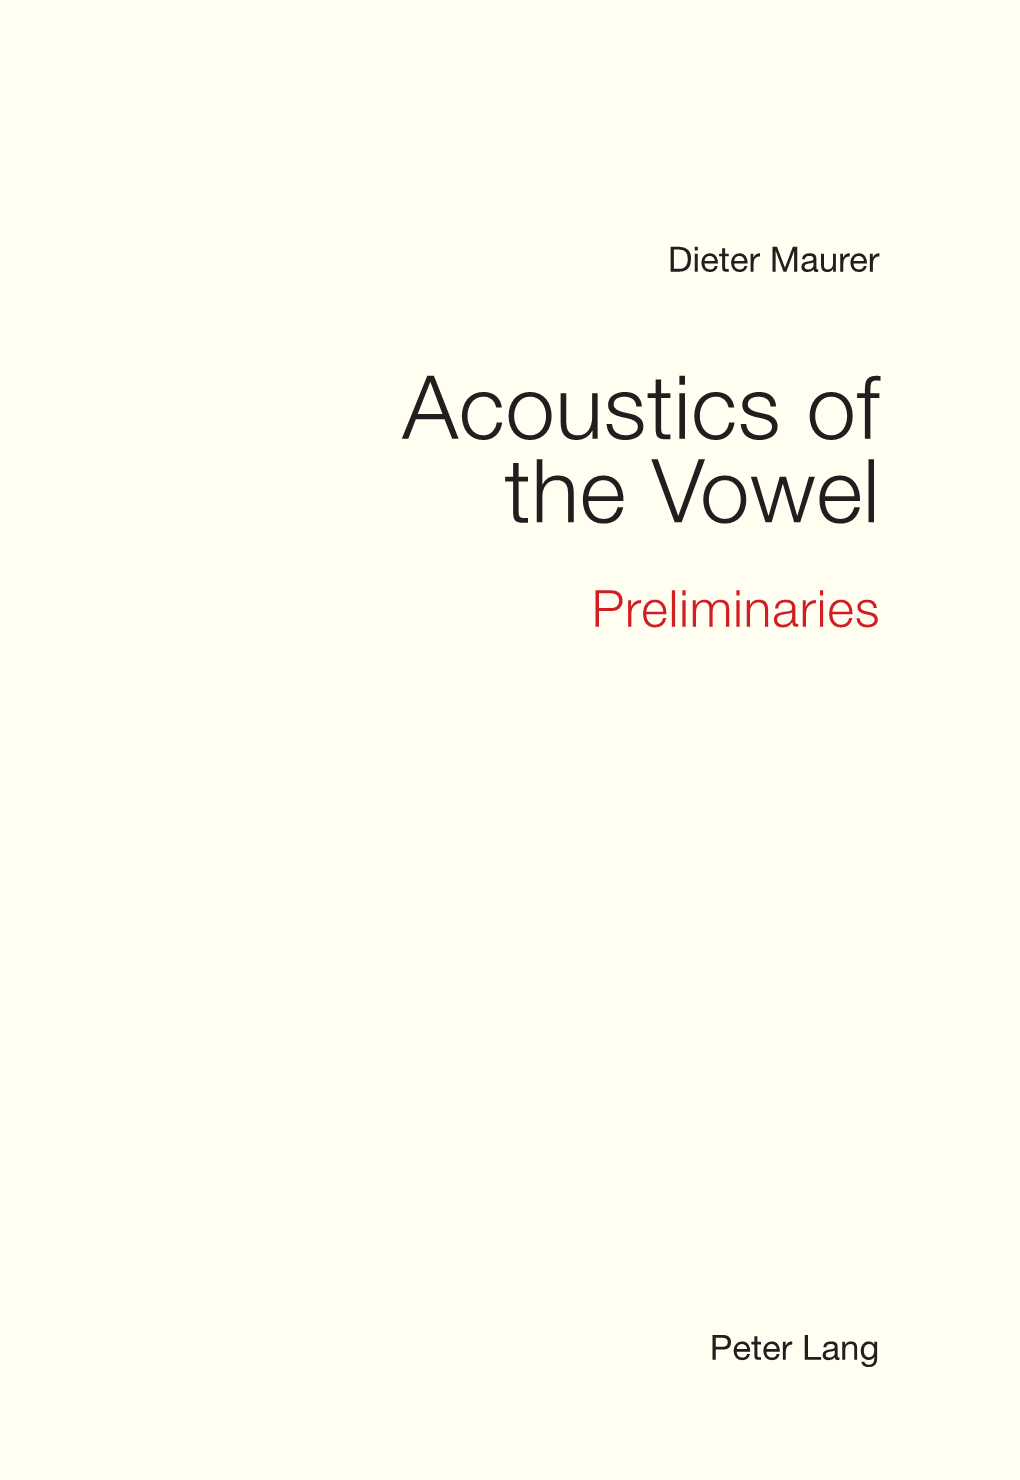 Acoustics of the Vowel Preliminaries Acoustics of the Vowel Preliminaries Dieter Maurer Peter Lang Mental Problem